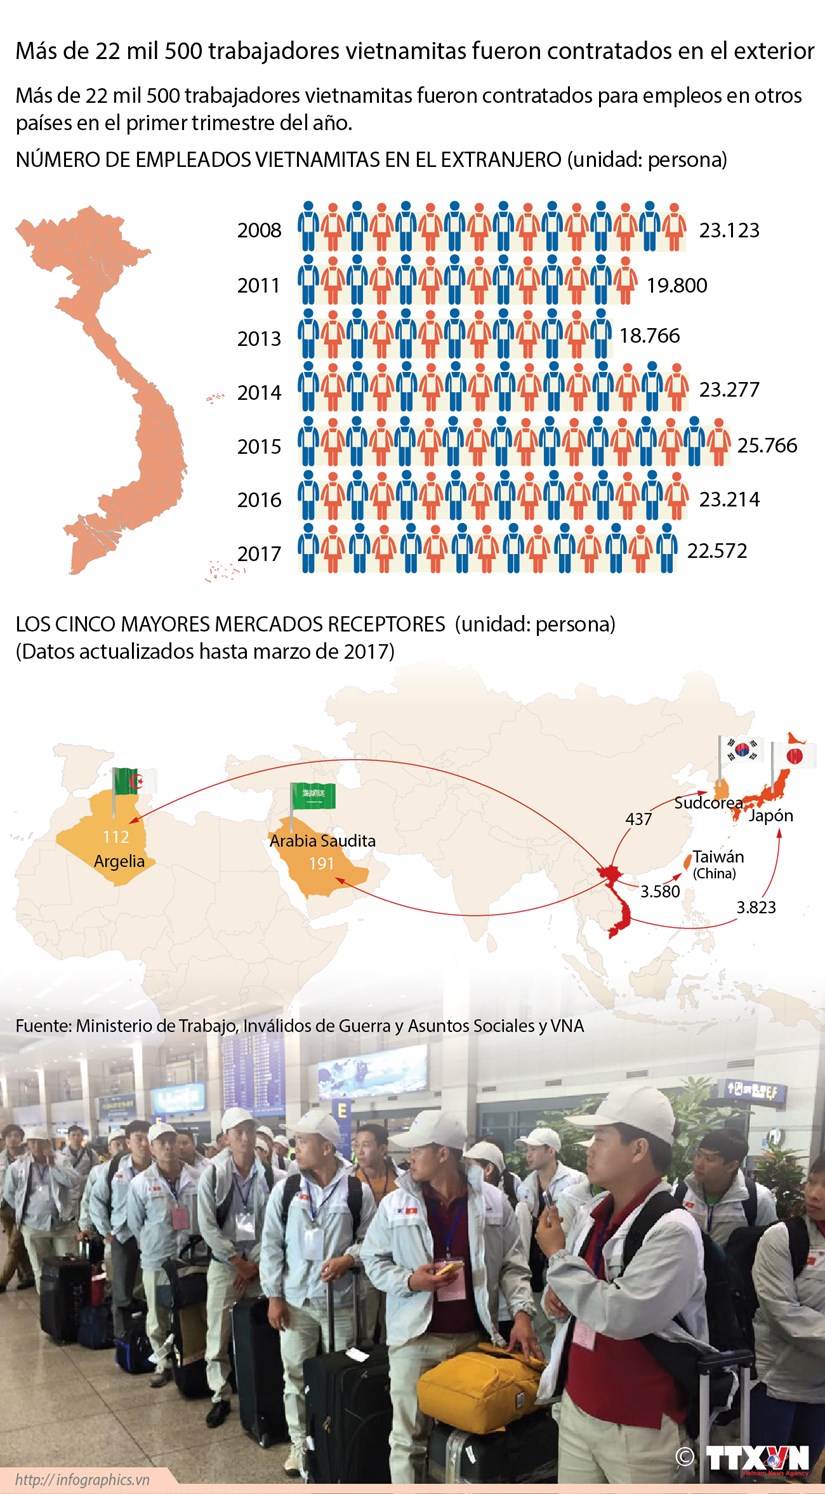 [Infografia] Trabajadores de Vietnam en el extranjero hinh anh 1